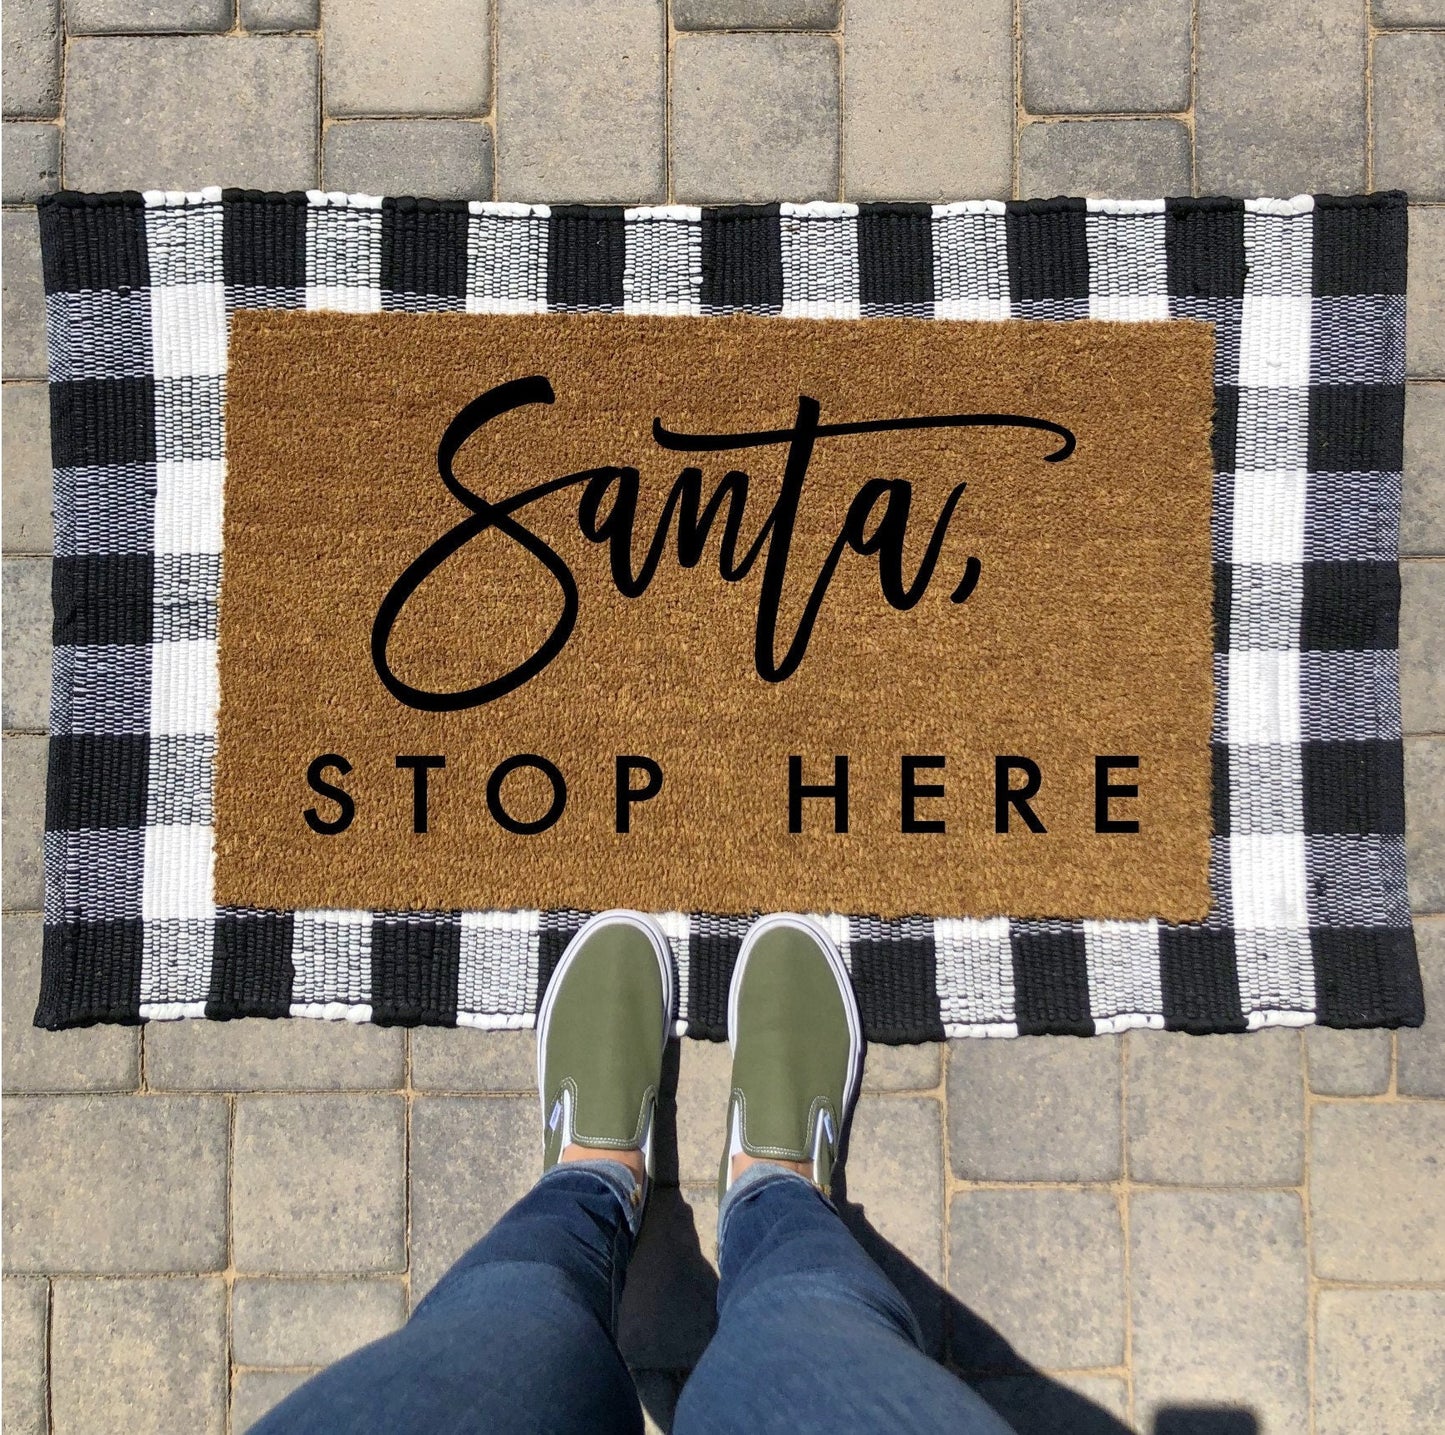 Santa Stop Here Doormat